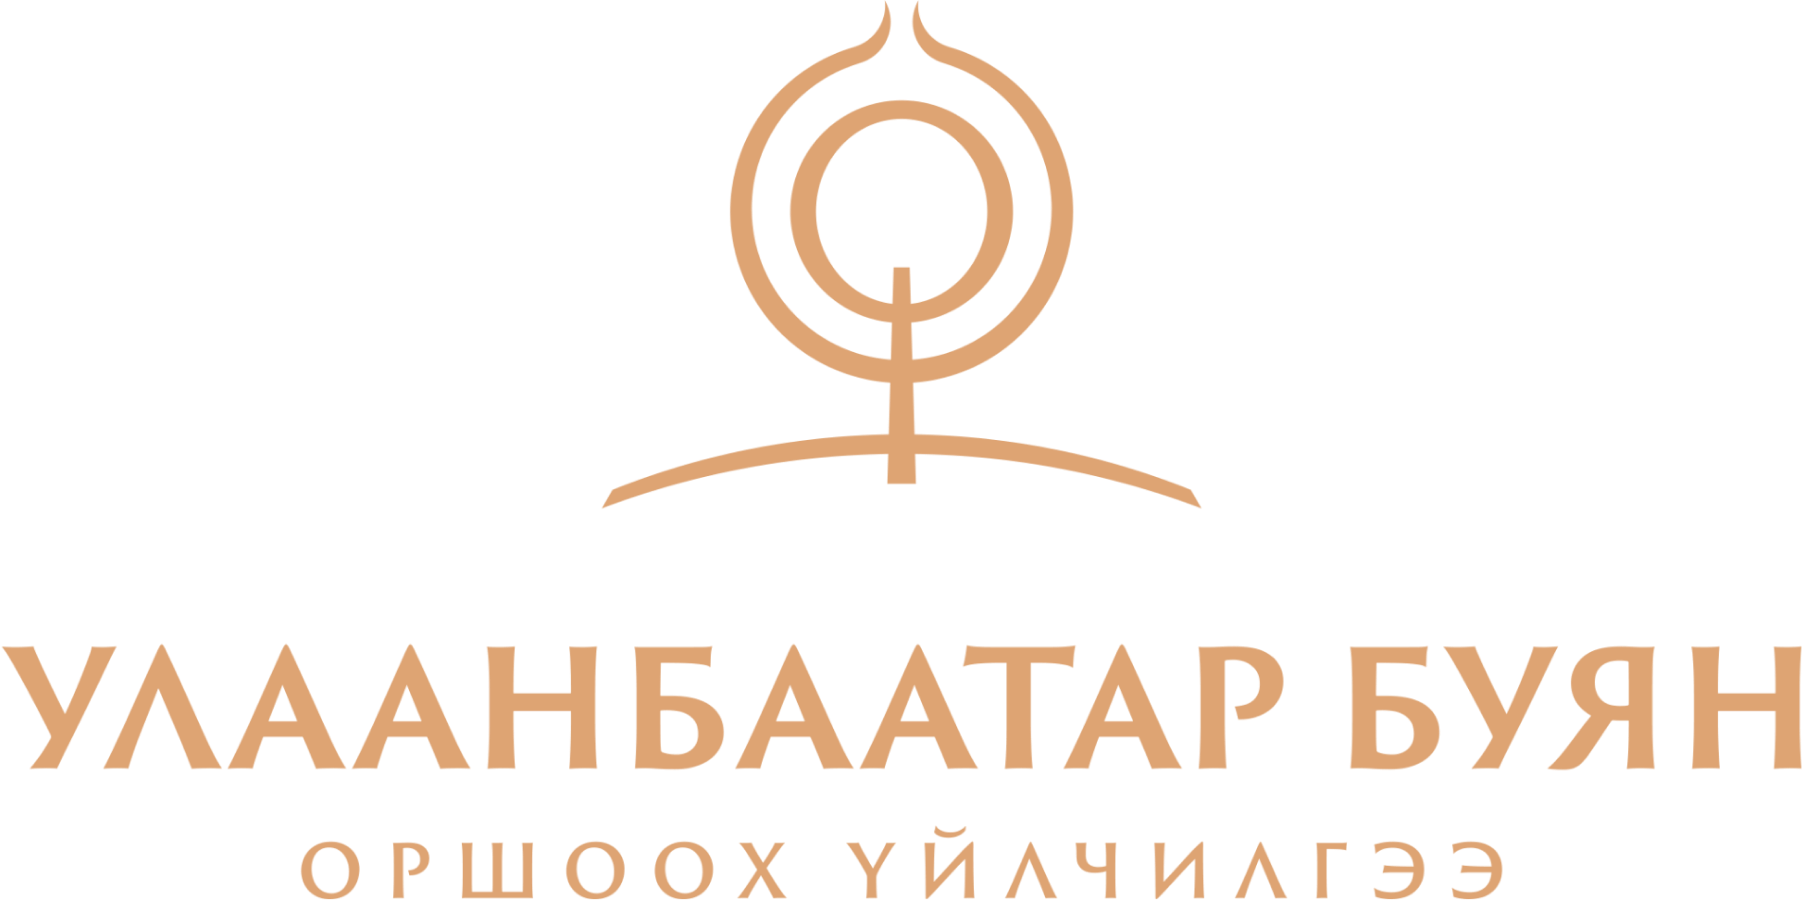 Ulaanbaatar Buyan LLC